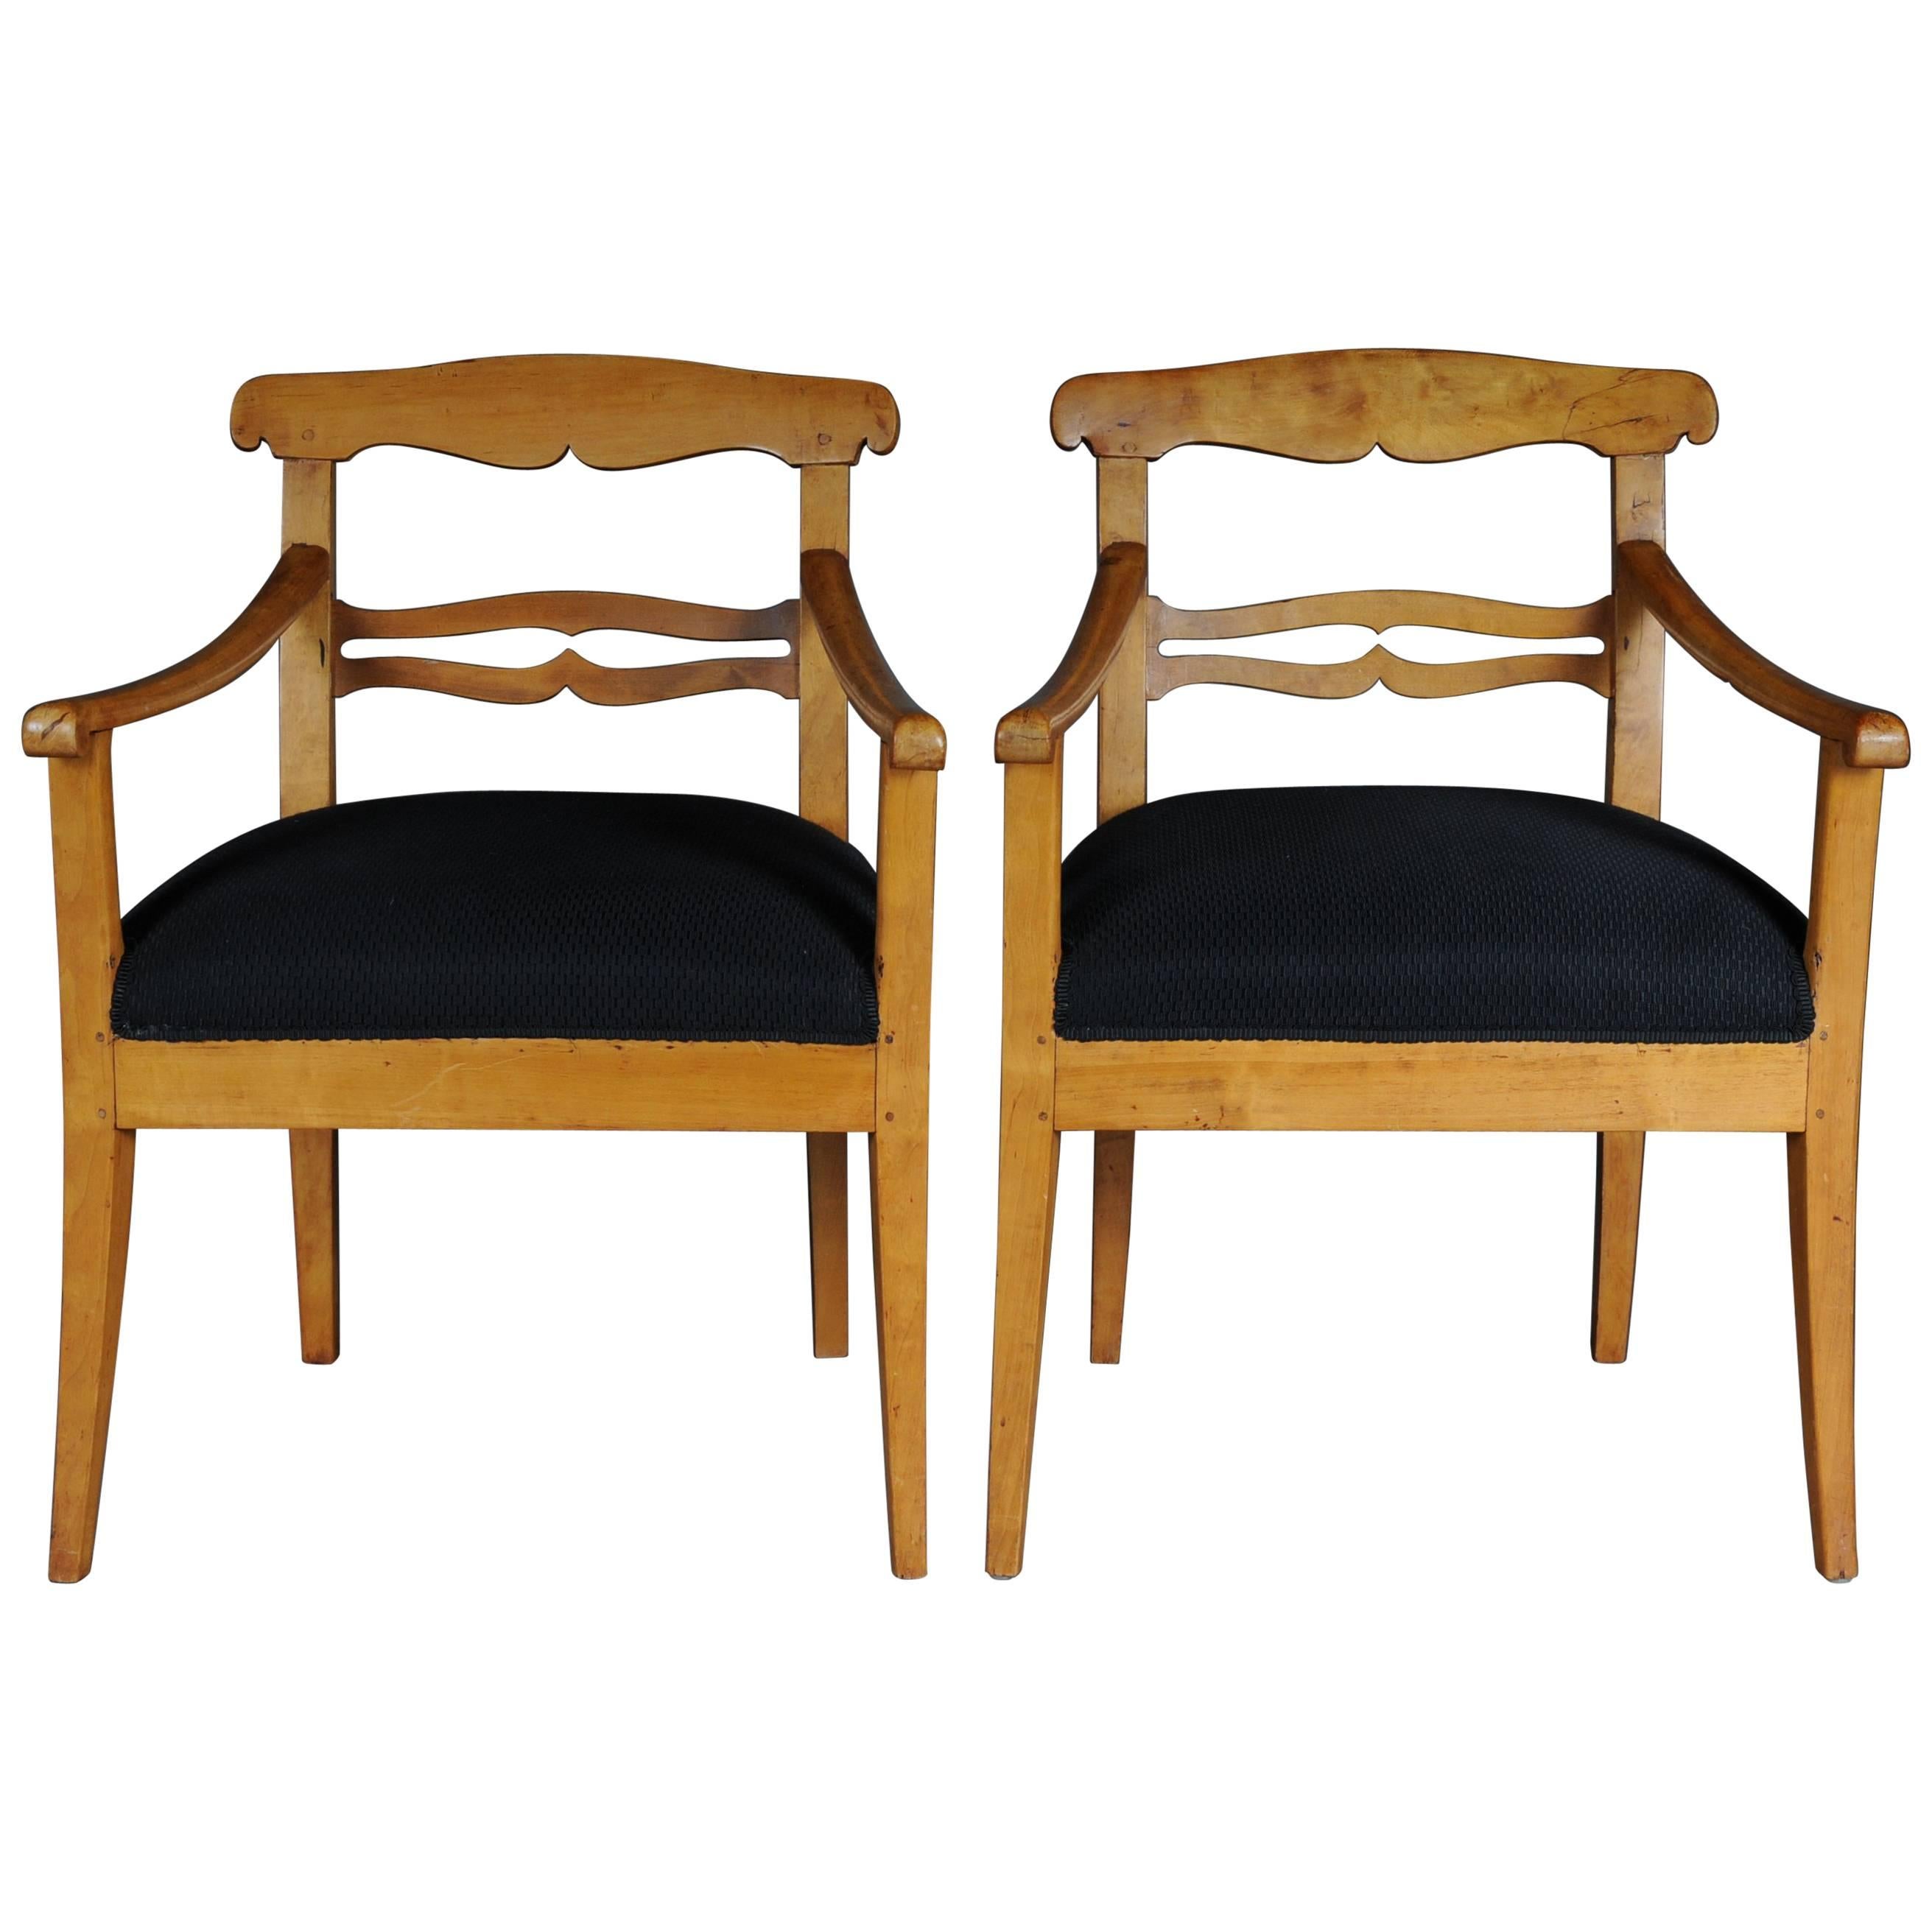 Zwei Biedermeier-Sessel aus massivem Birkenholz aus dem 19. Jahrhundert